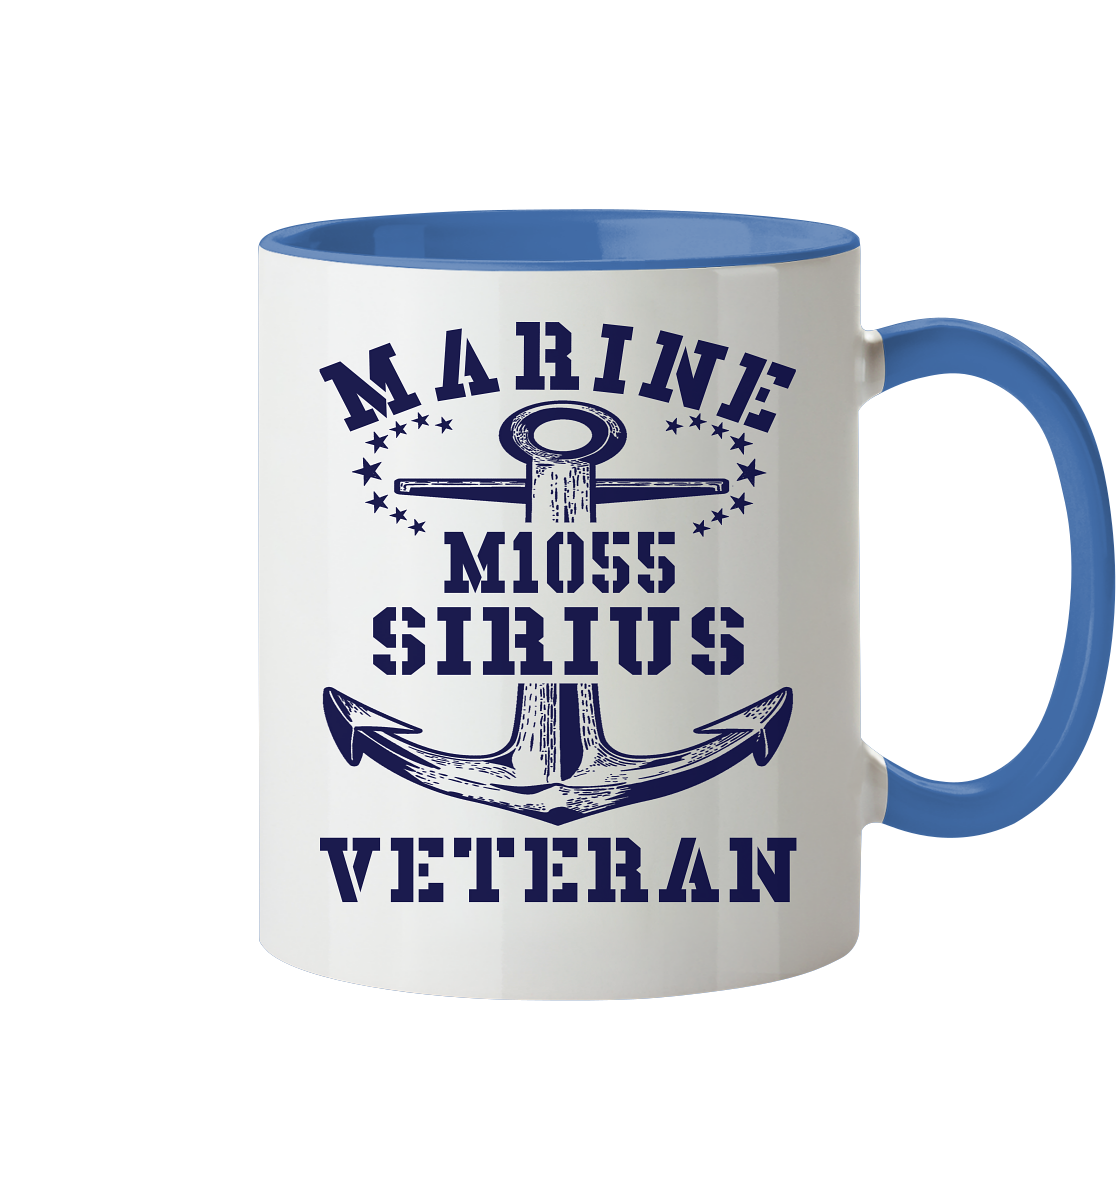 SM-Boot M1055 SIRIUS Marine Veteran - Tasse zweifarbig